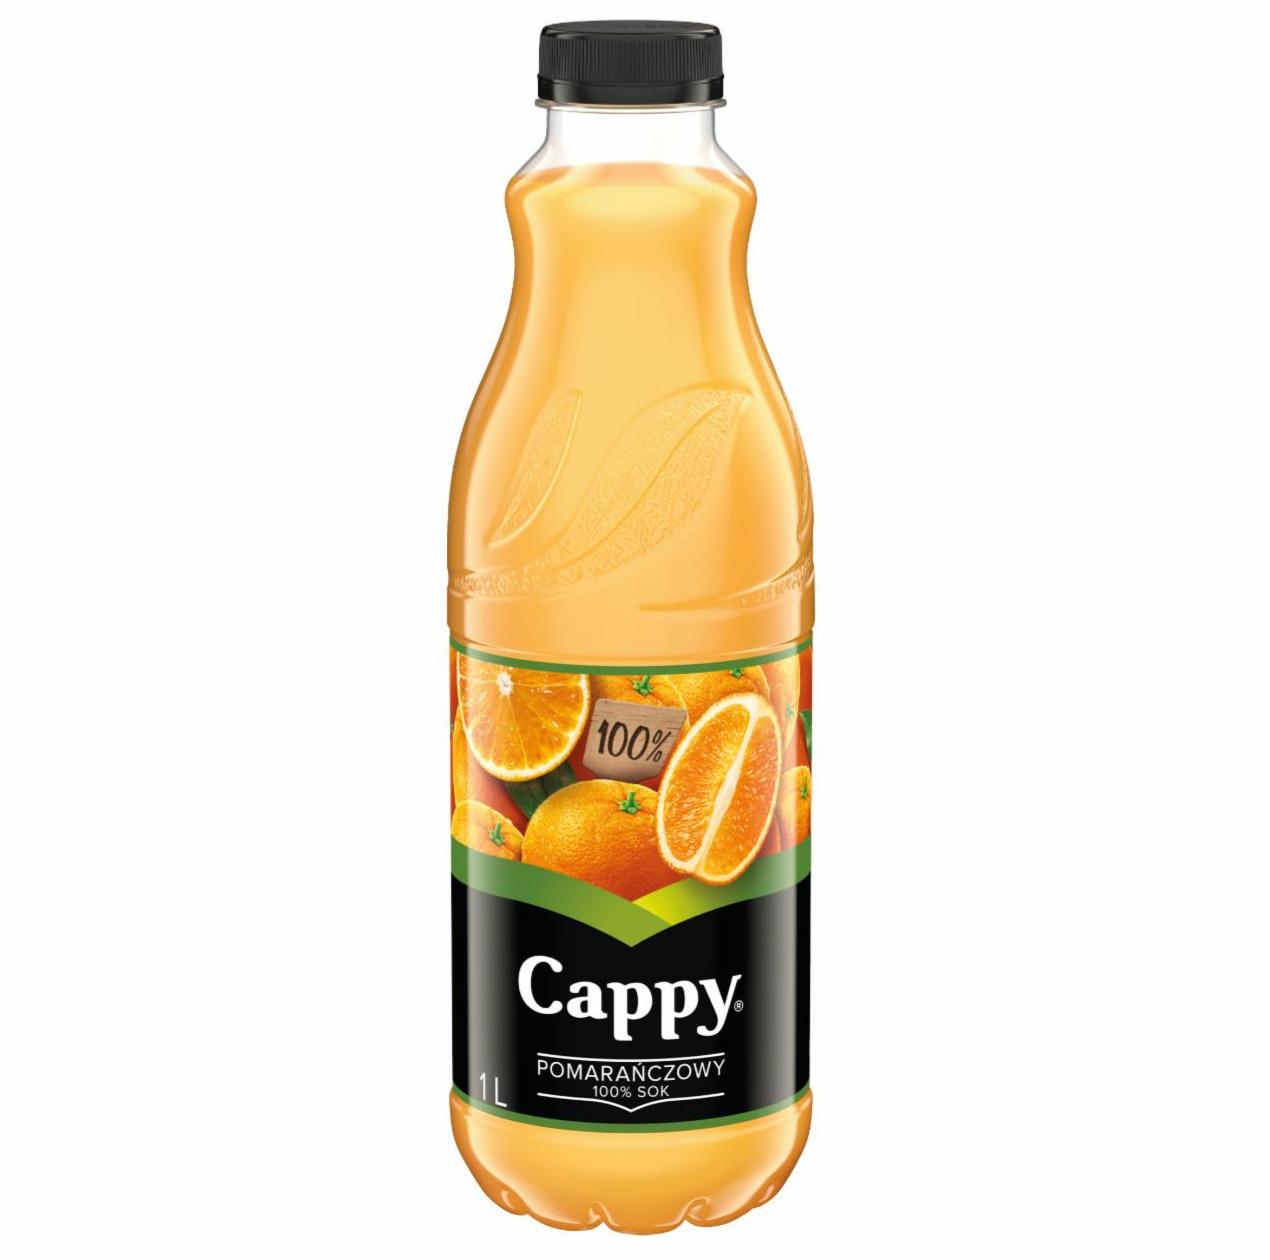 Zdjęcia - Cappy 100 % sok pomarańczowy 1 l